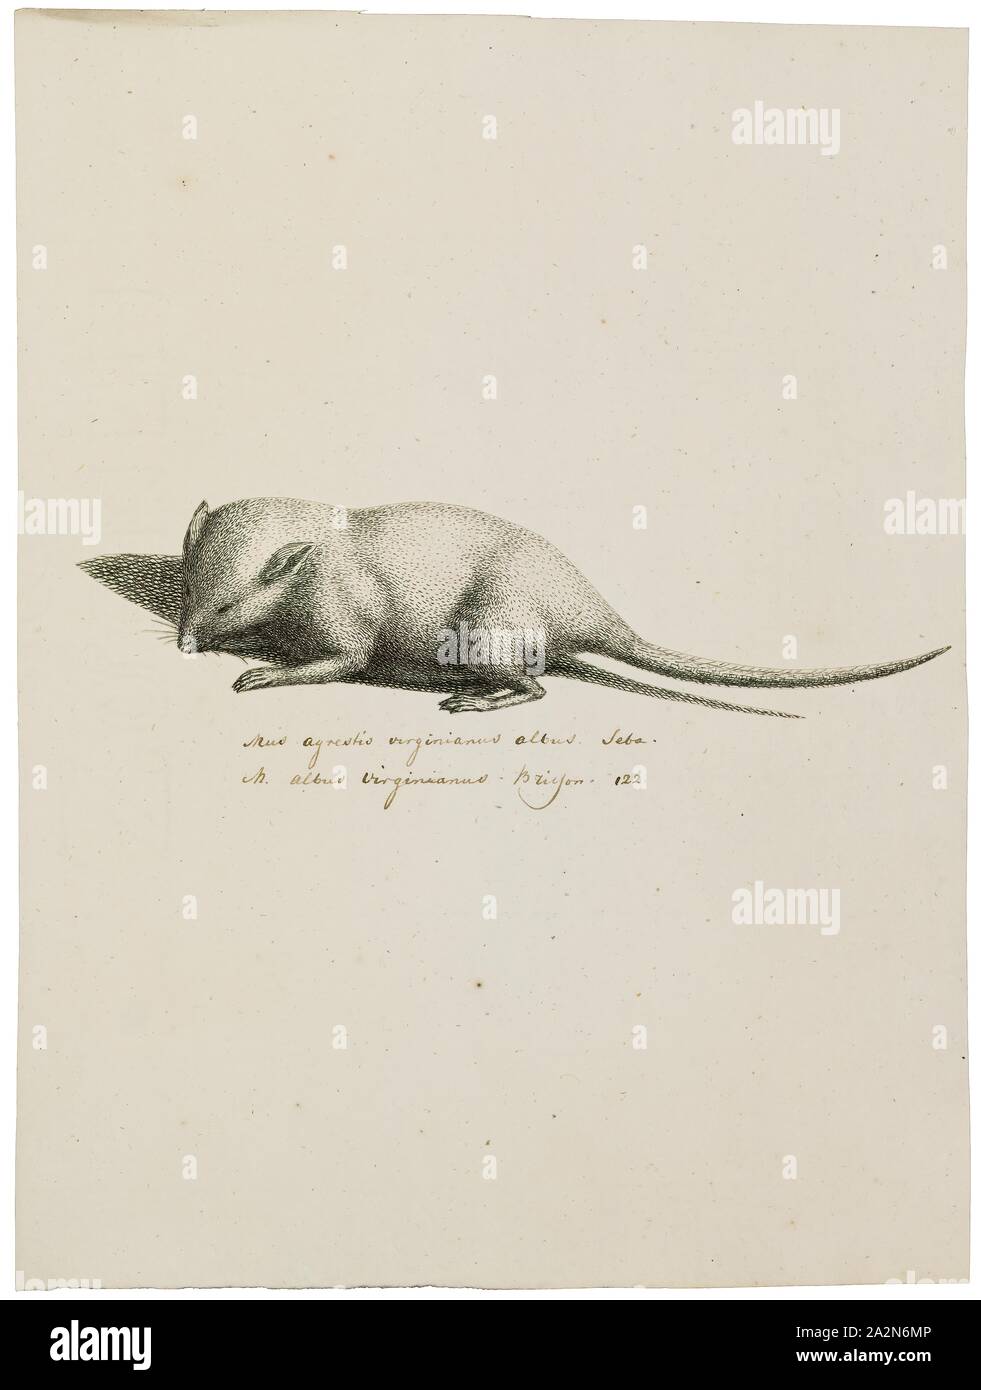 Mus agrestis virginianus albus, Print, 1700-1880 Stock Photo